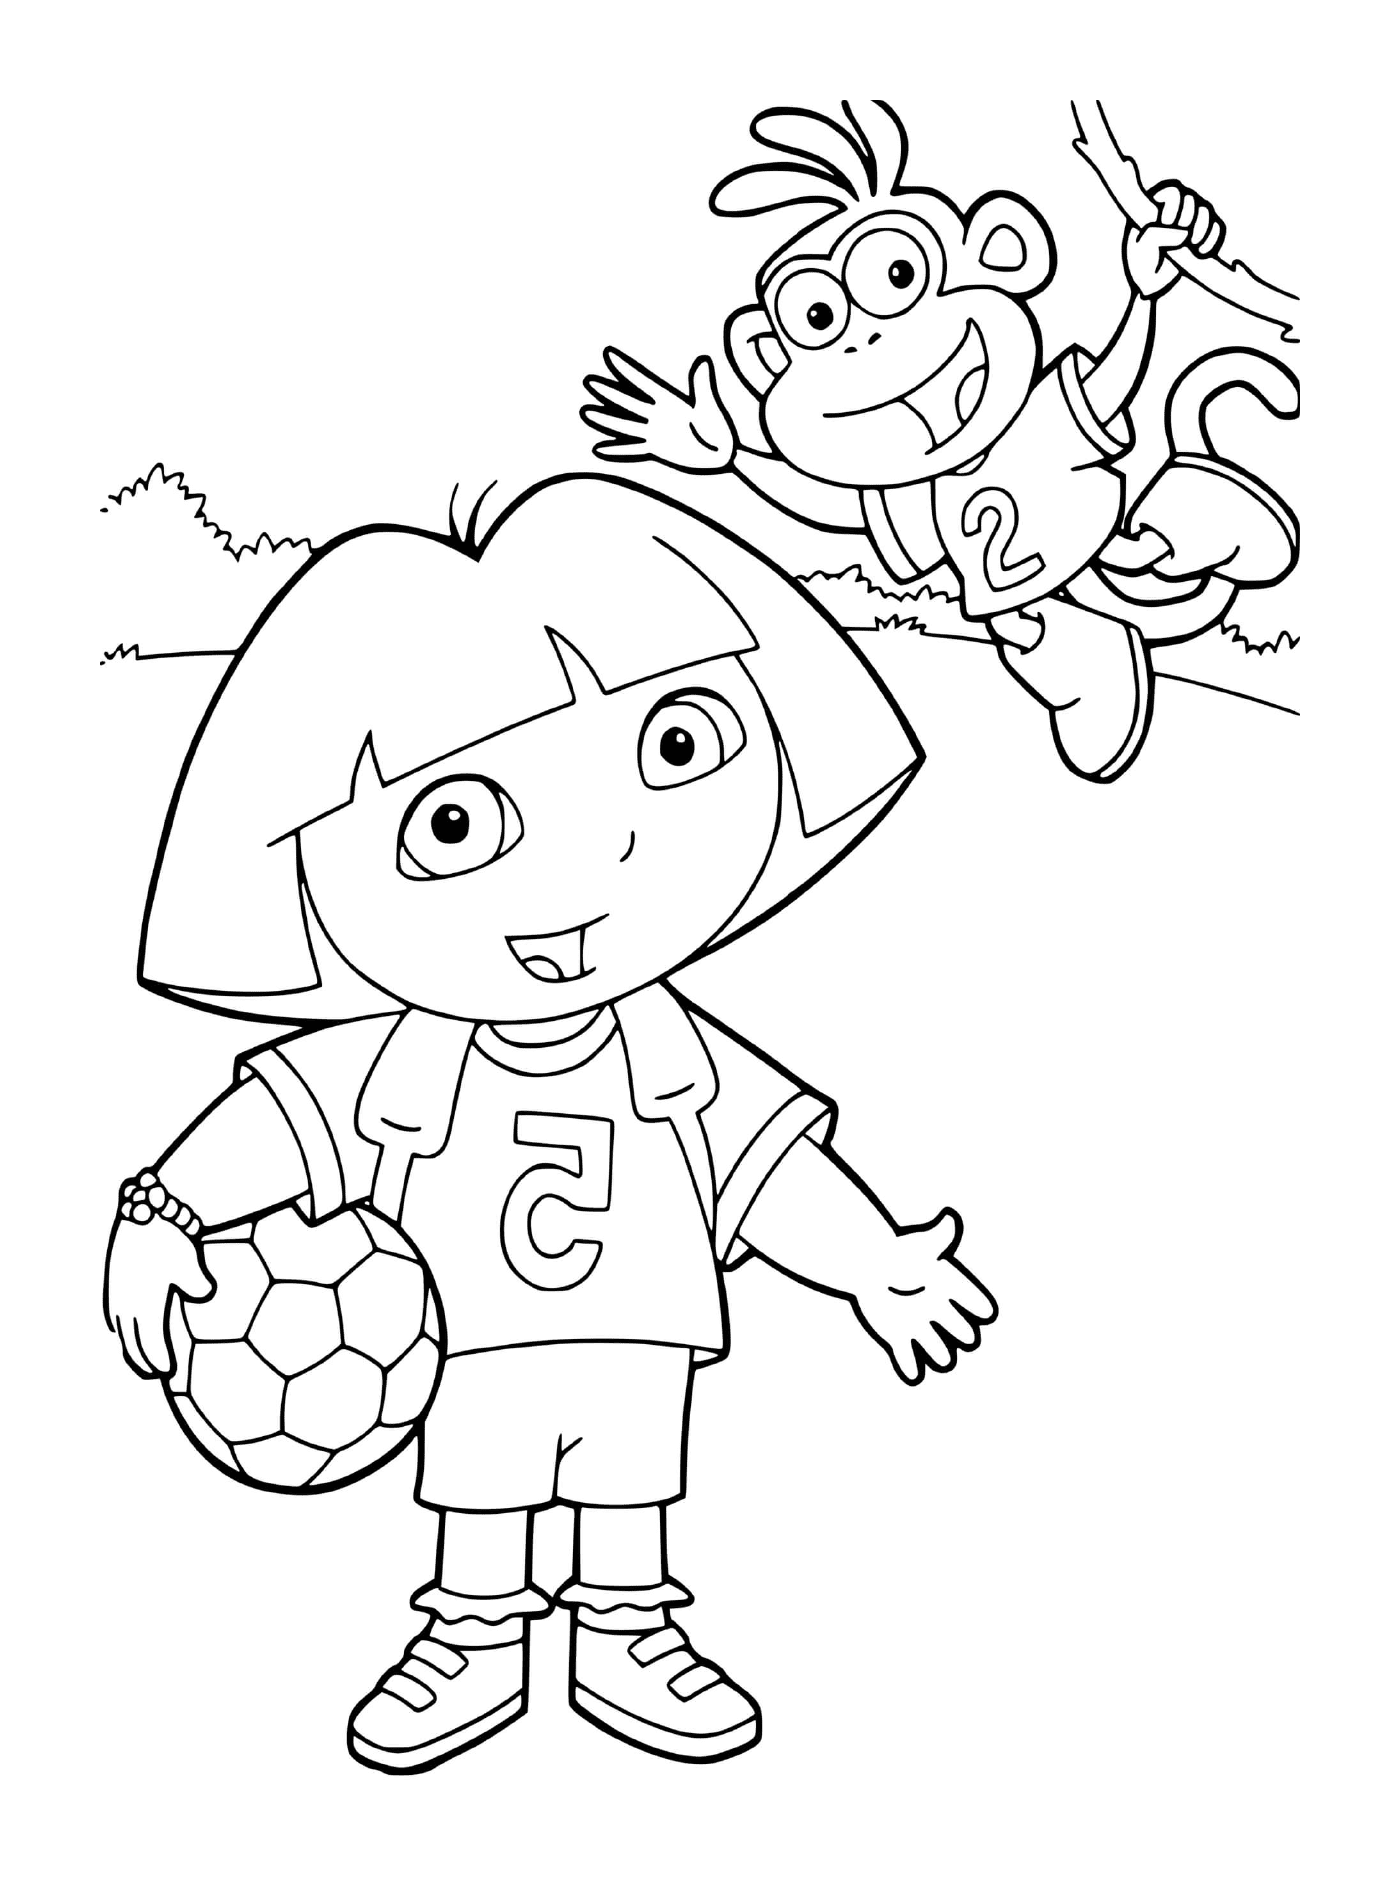  Dora joga futebol com Babouche em sua equipe 